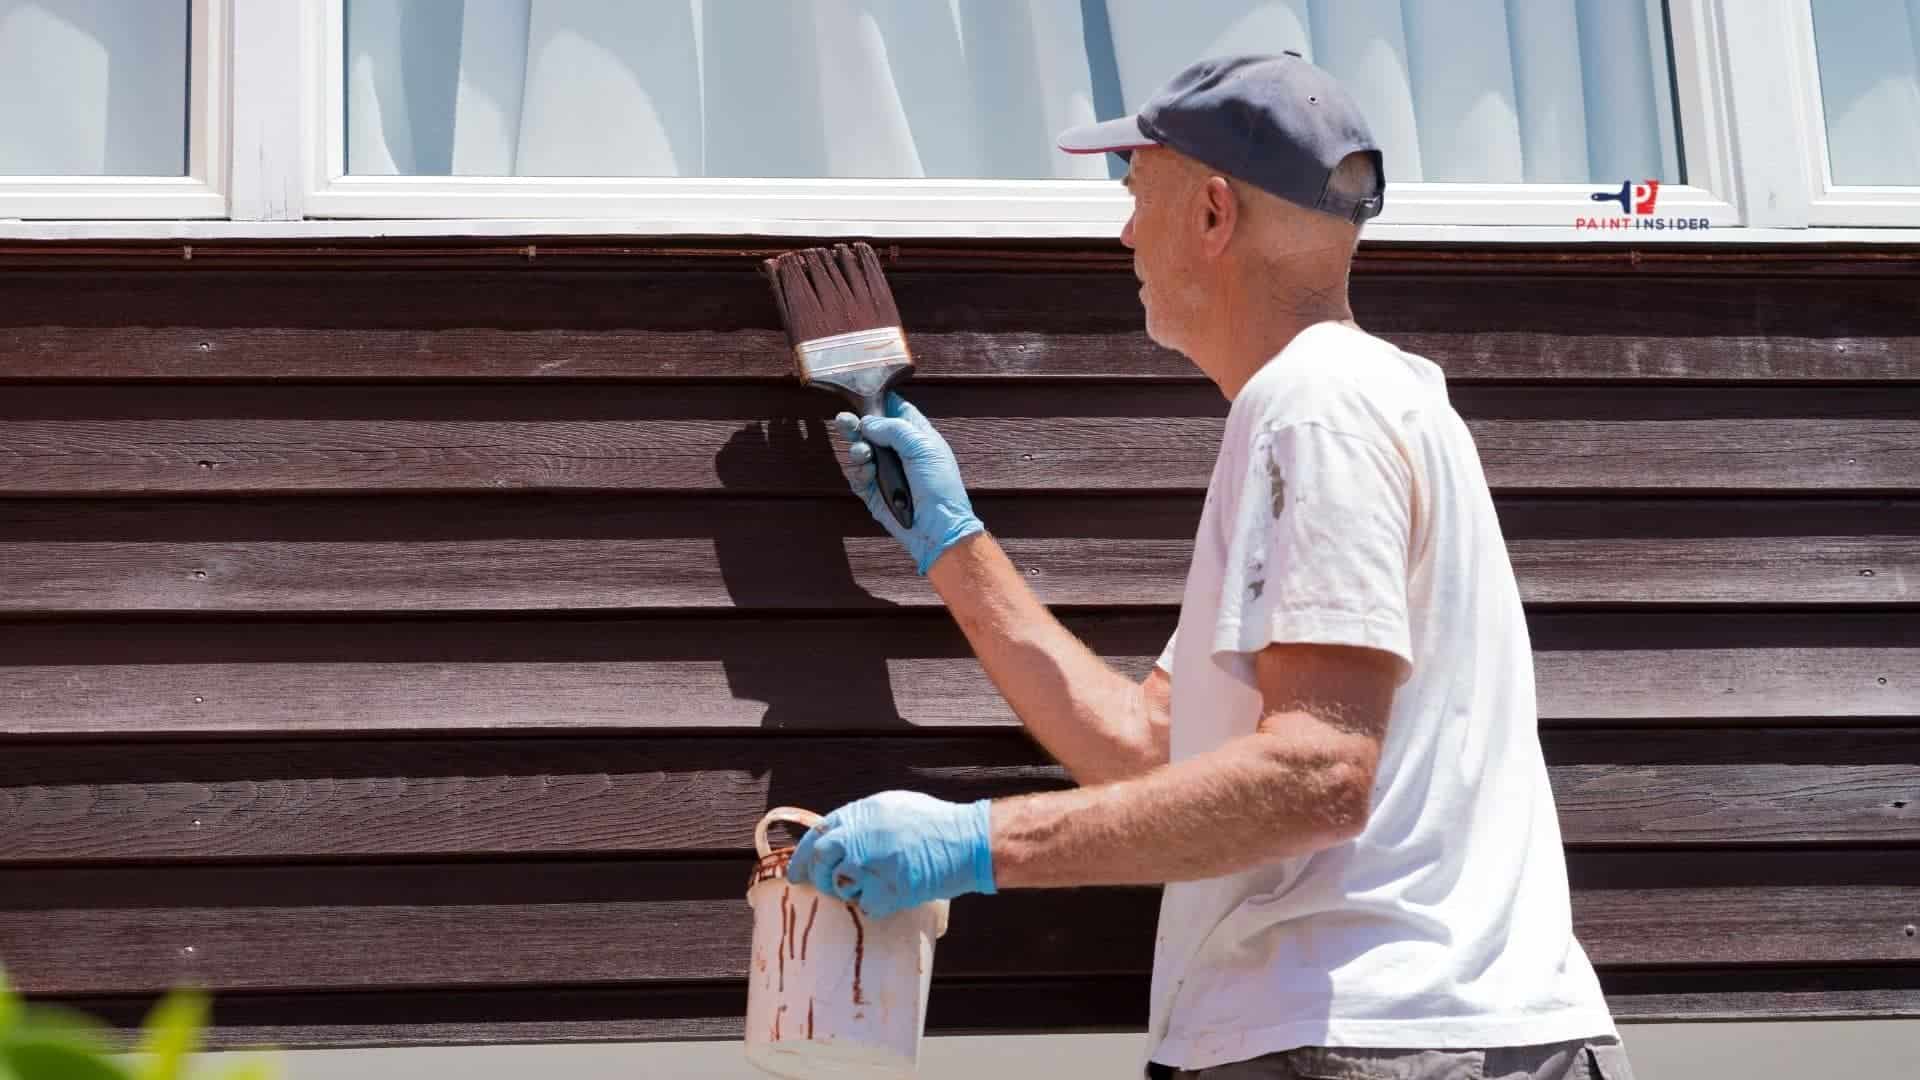 How To Paint Cedar